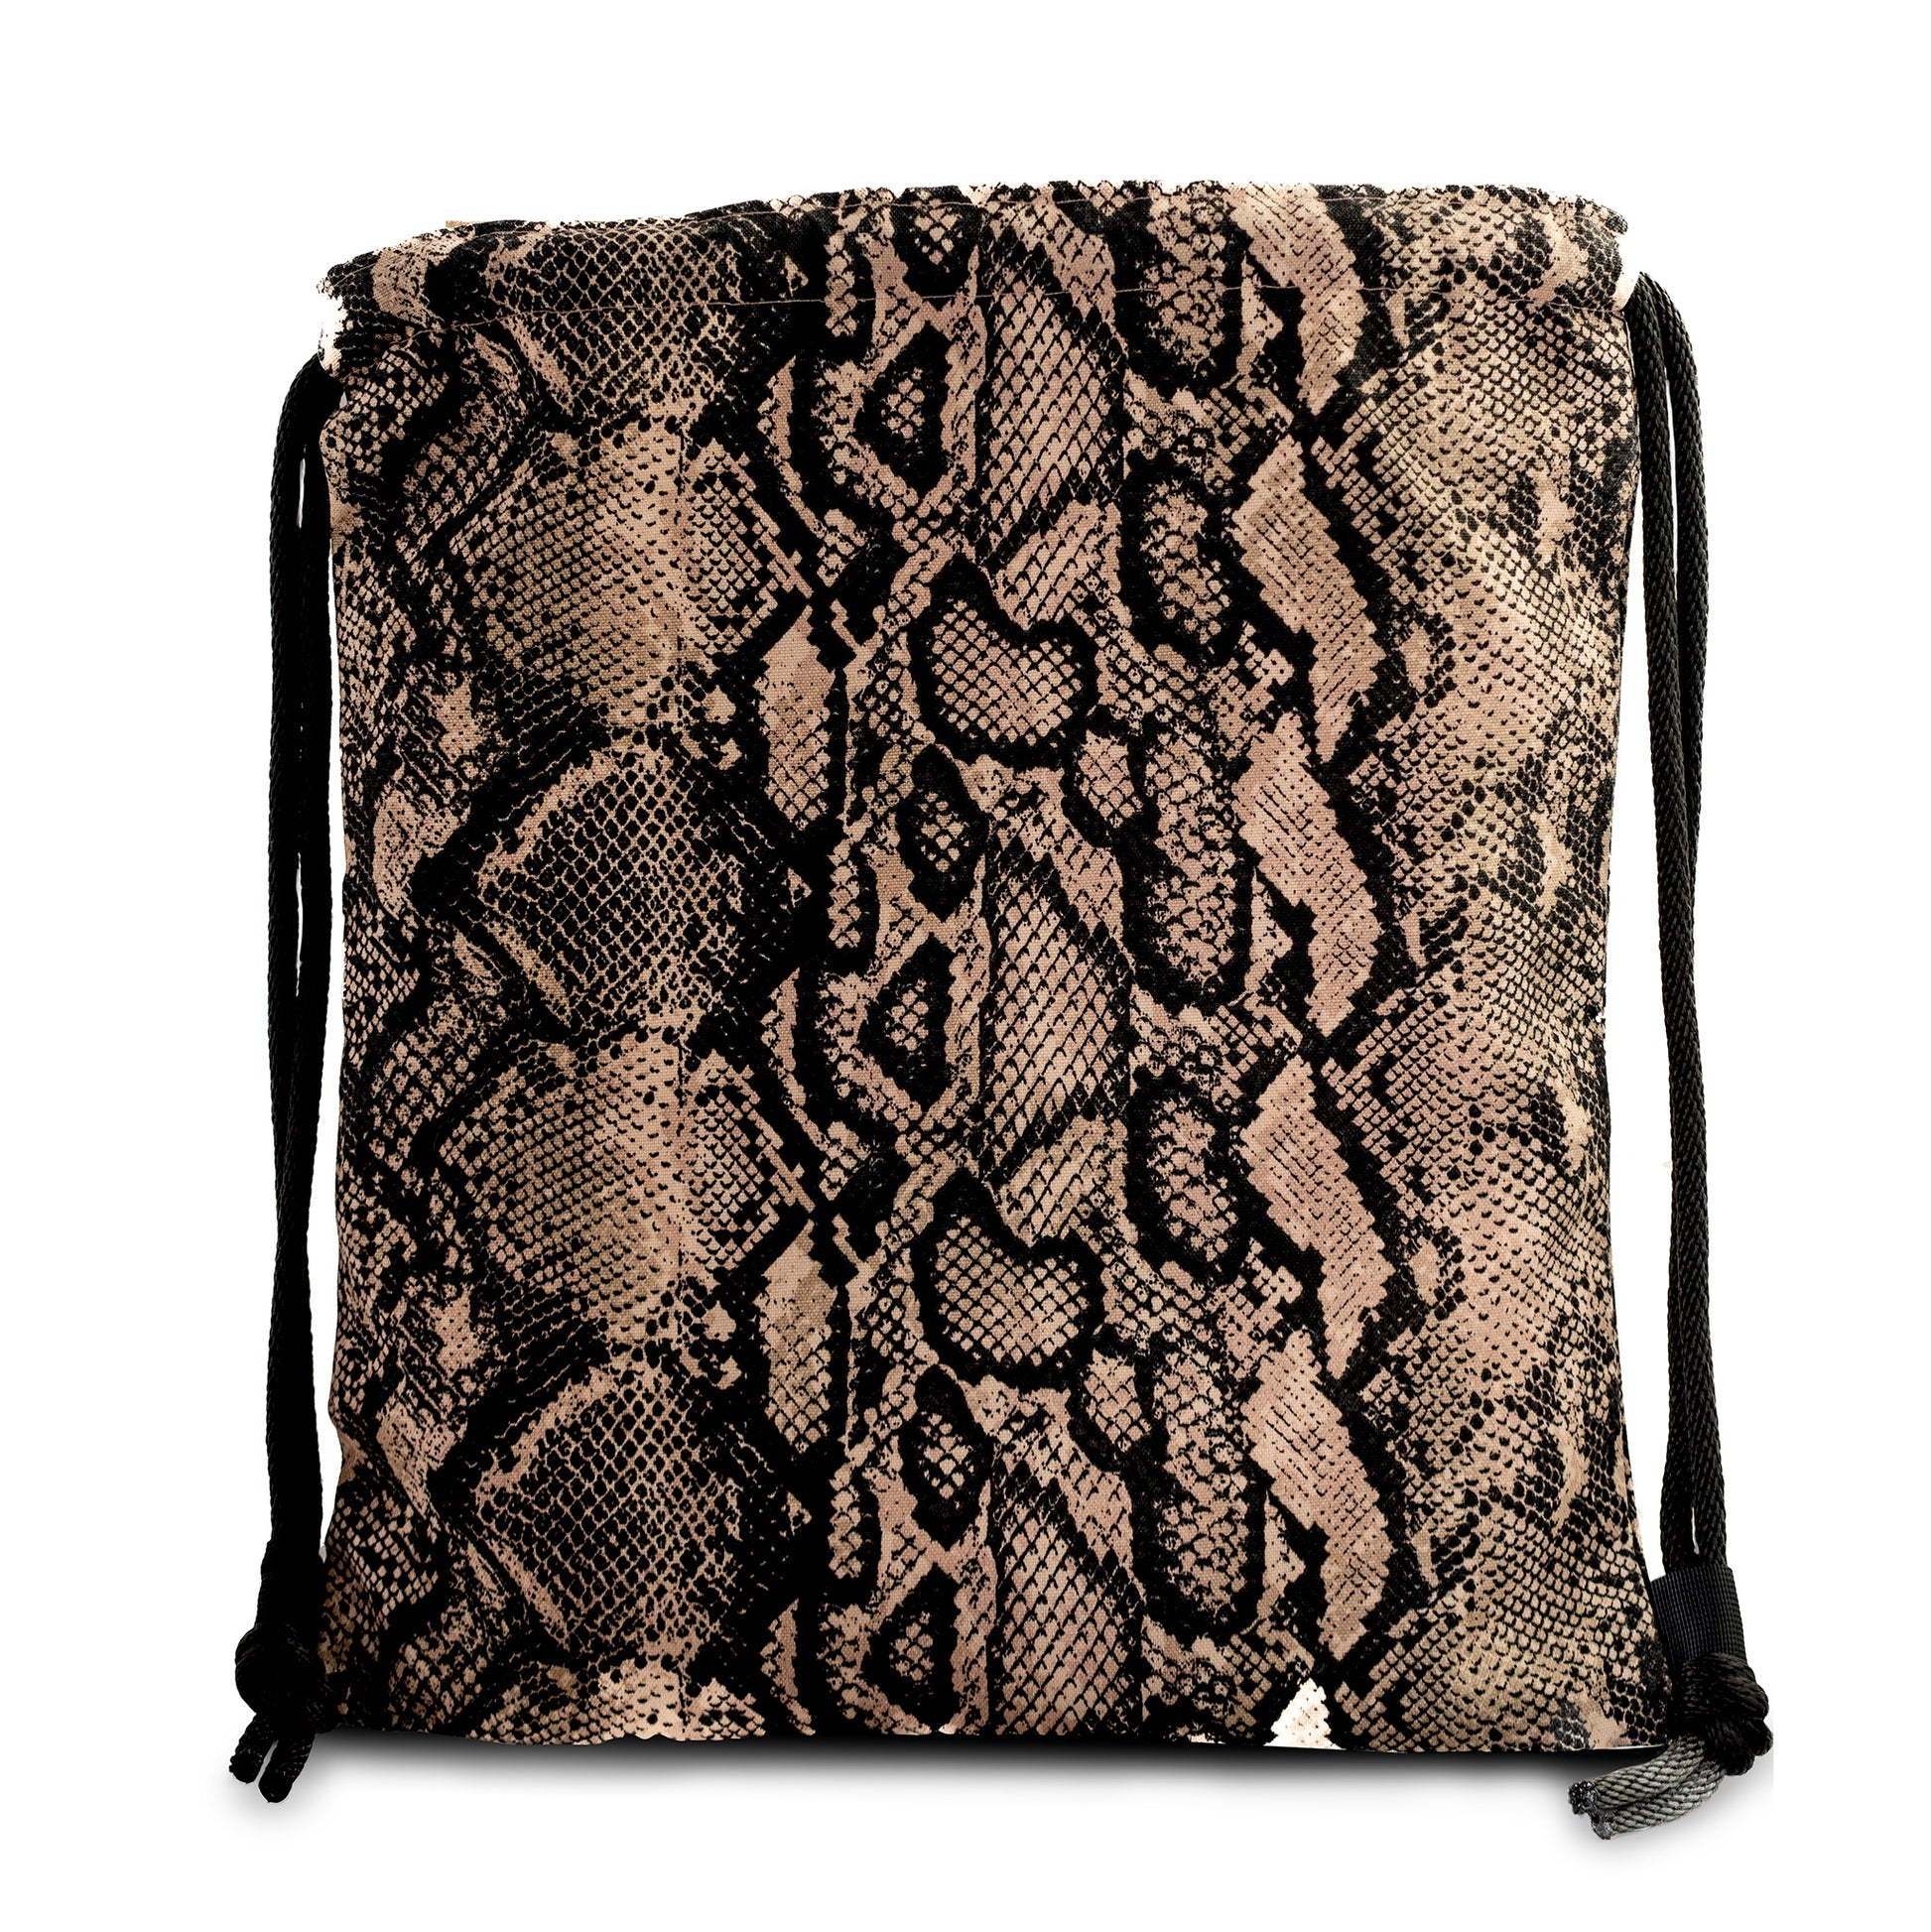 Pink & Black Snake Skin Print Drawstring Backpack - Niclordesigns 